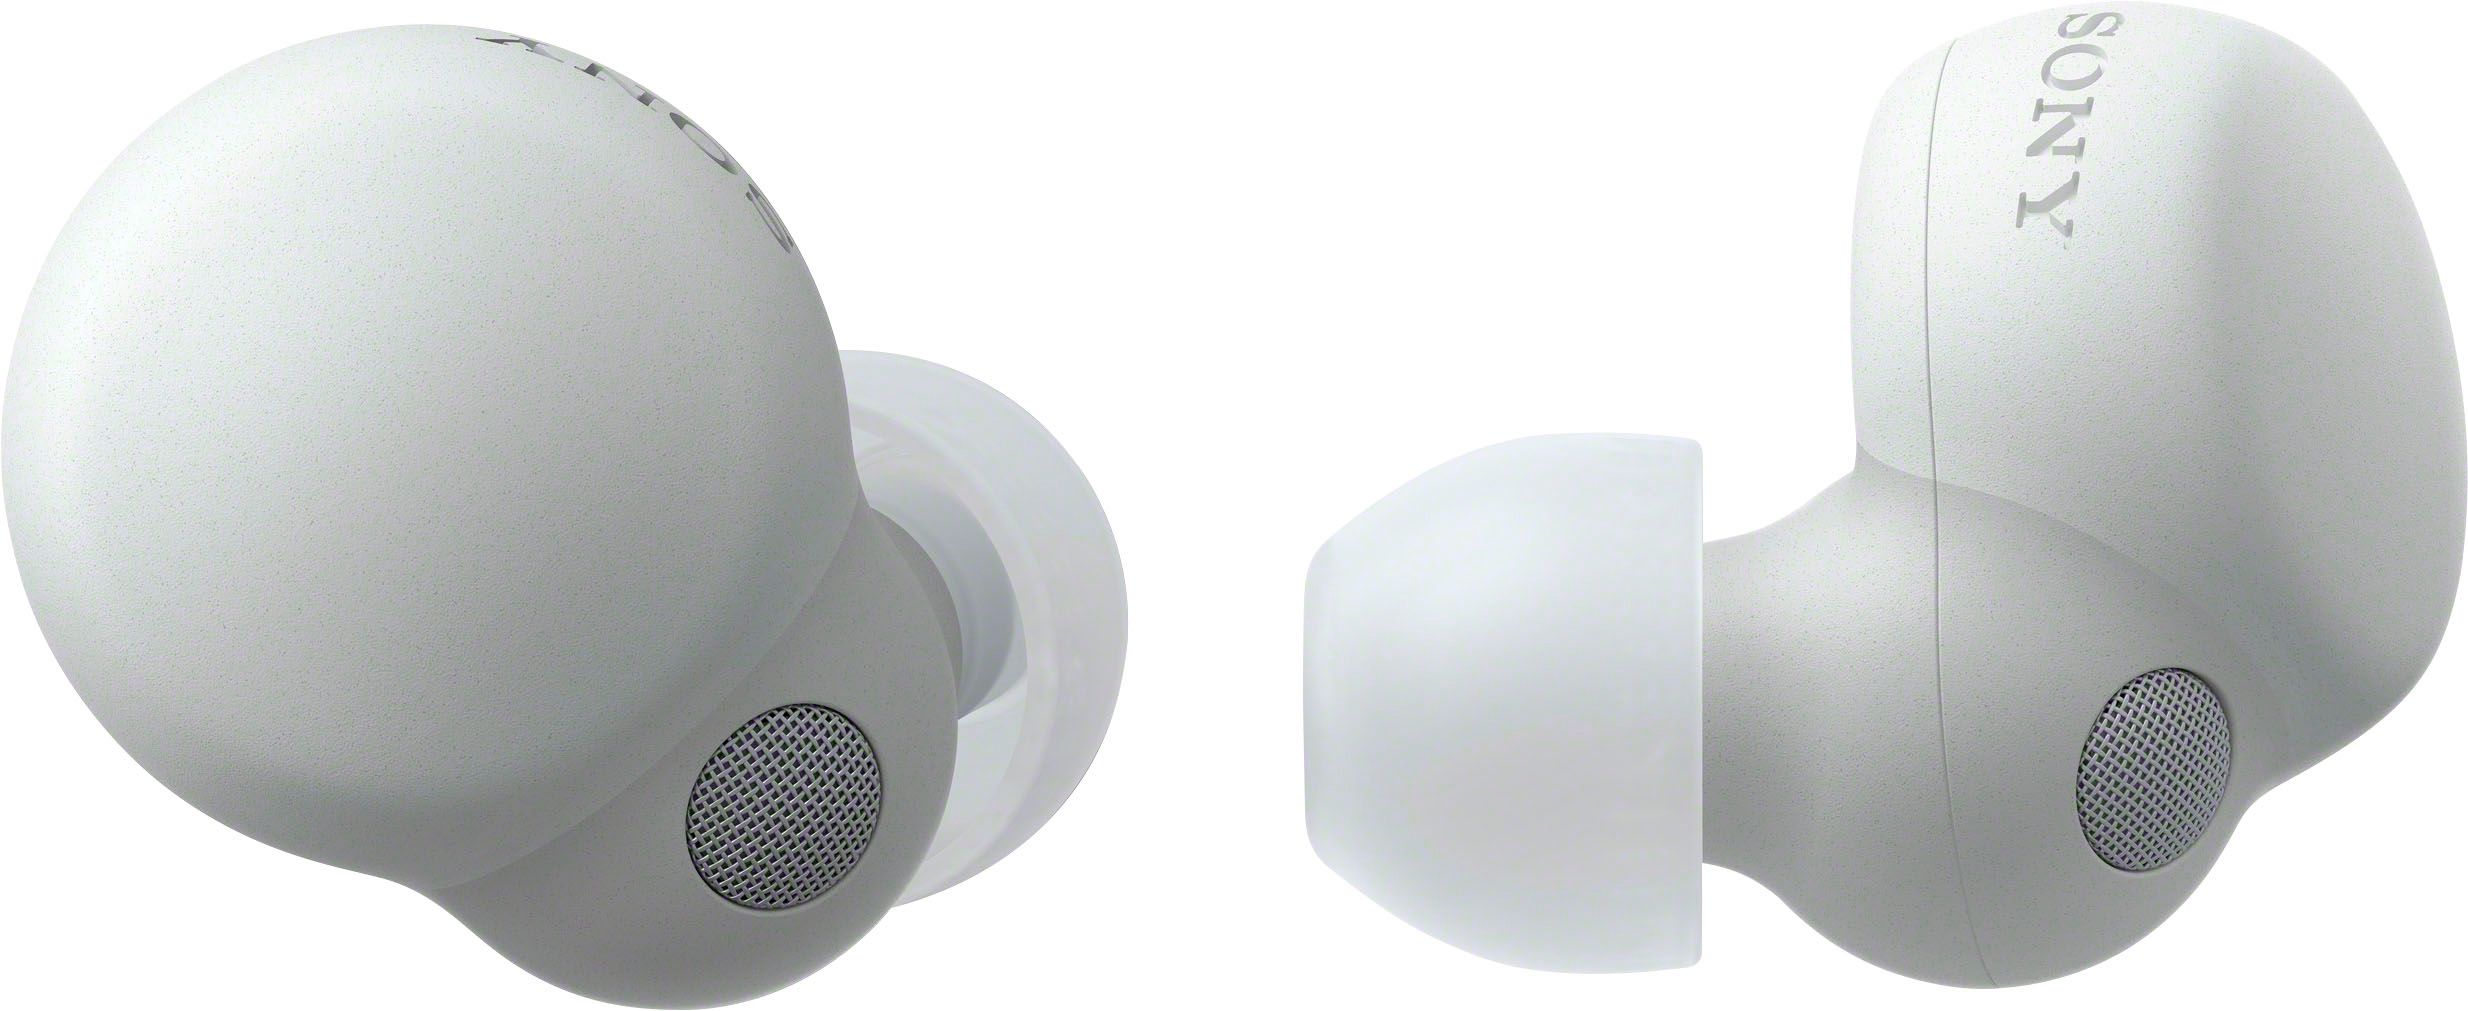 Sony LinkBuds S True Wireless Noise Canceling Earbuds White WFLS900N/W - Best Buy | Best Buy U.S.